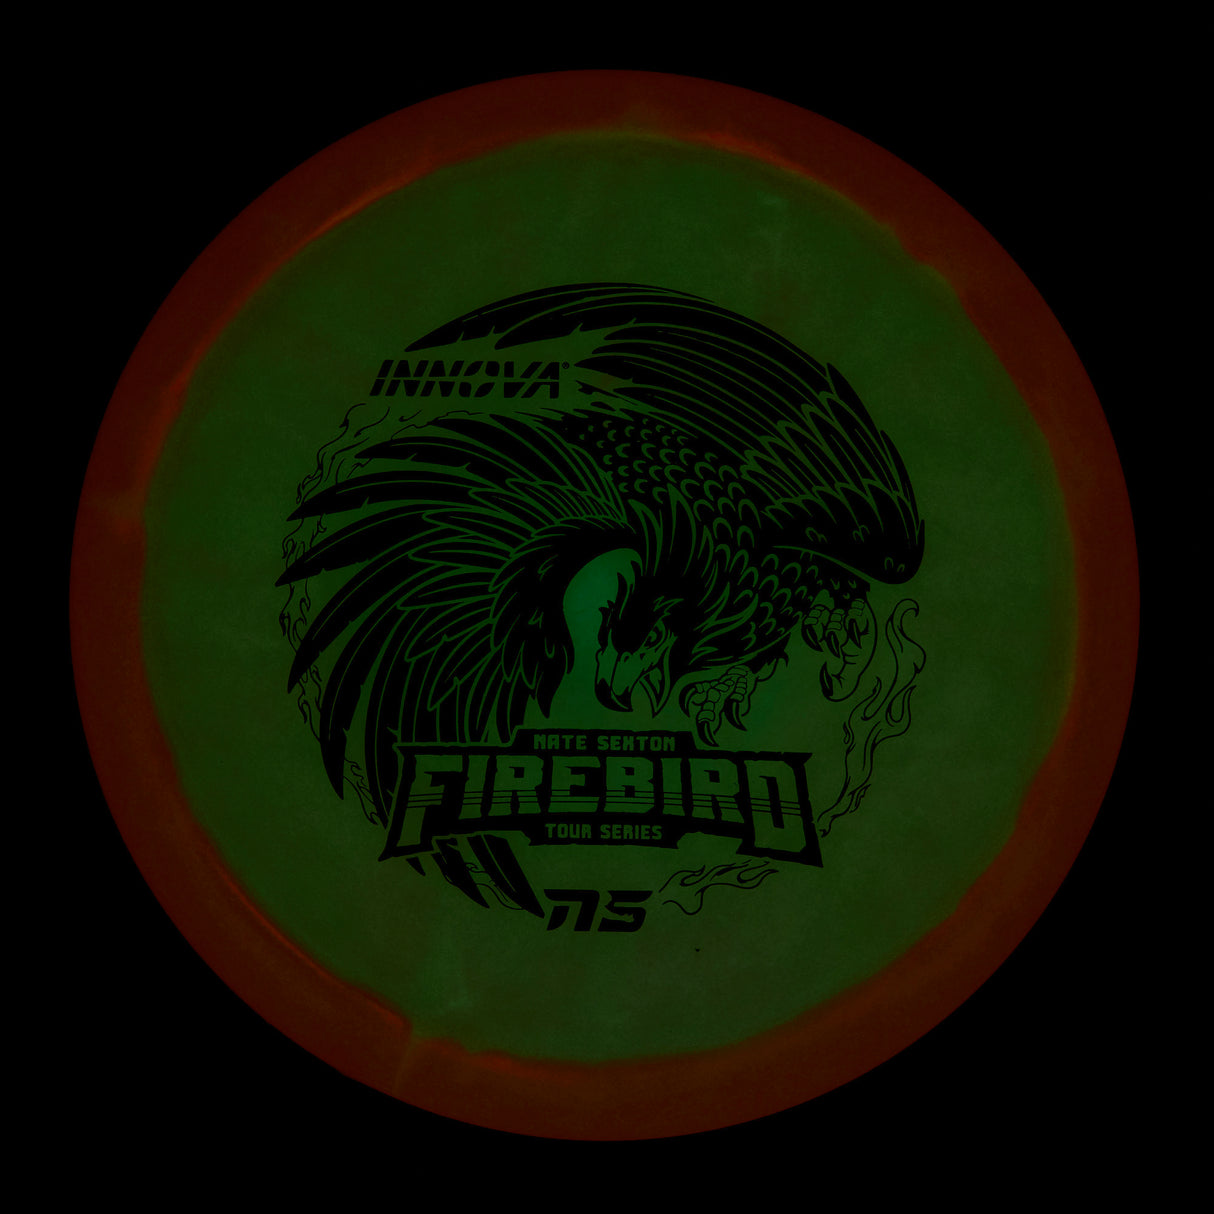 Innova Firebird - Nate Sexton Tour Series Champion Glow 171g | Style 0001